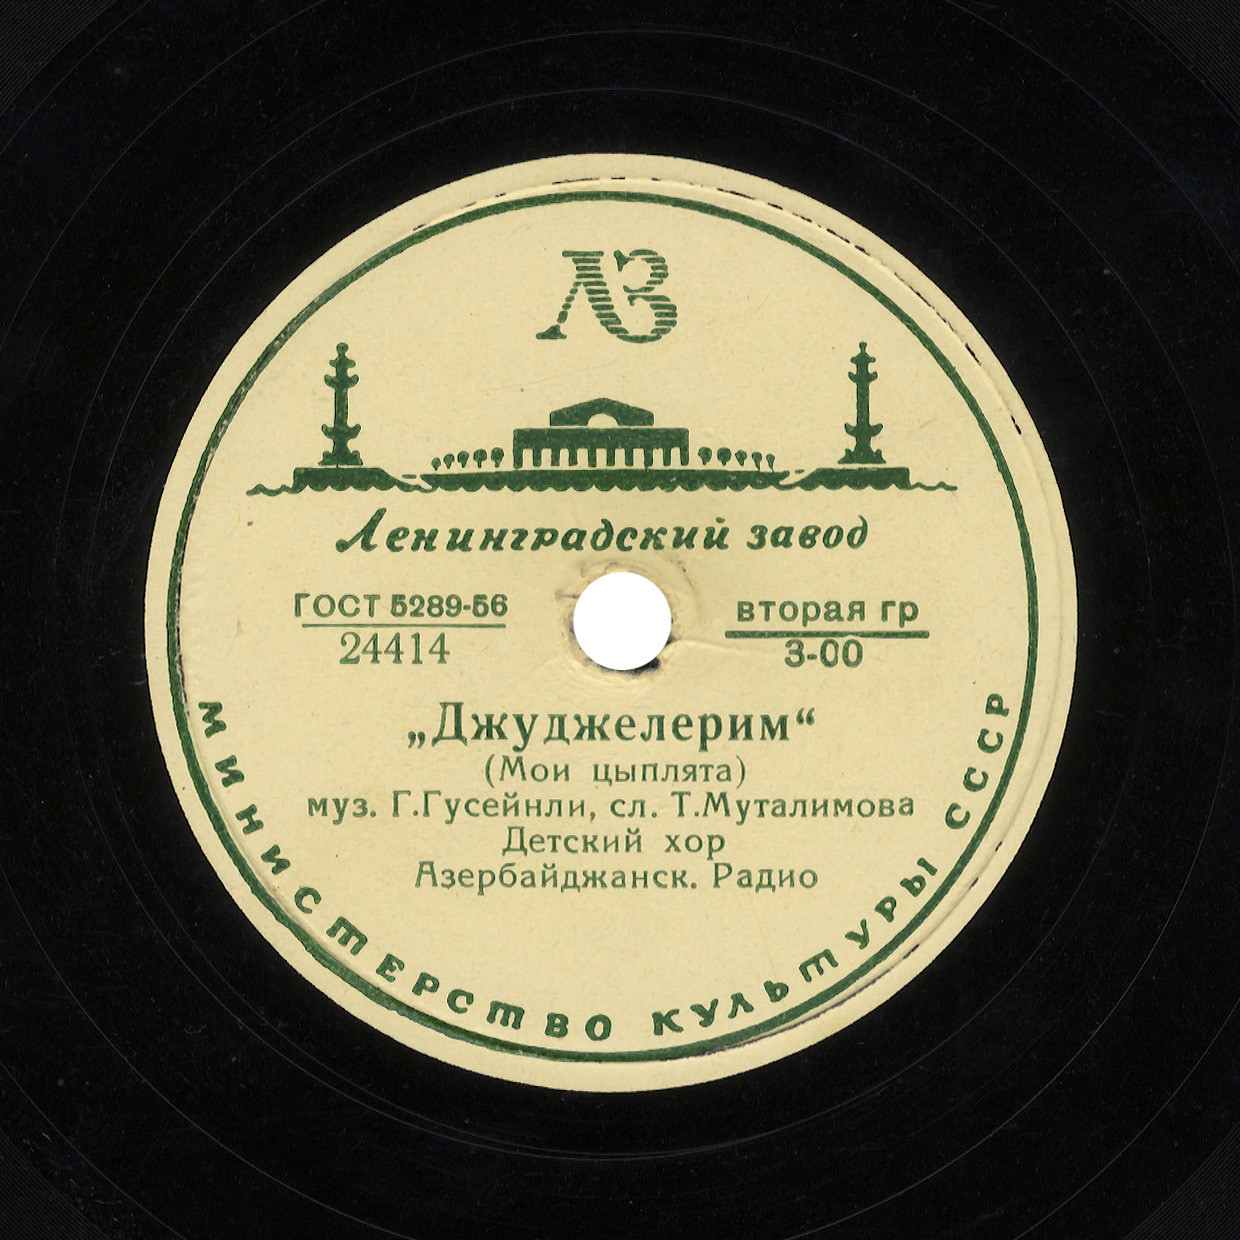 Детский хор Азербайджанского Радио